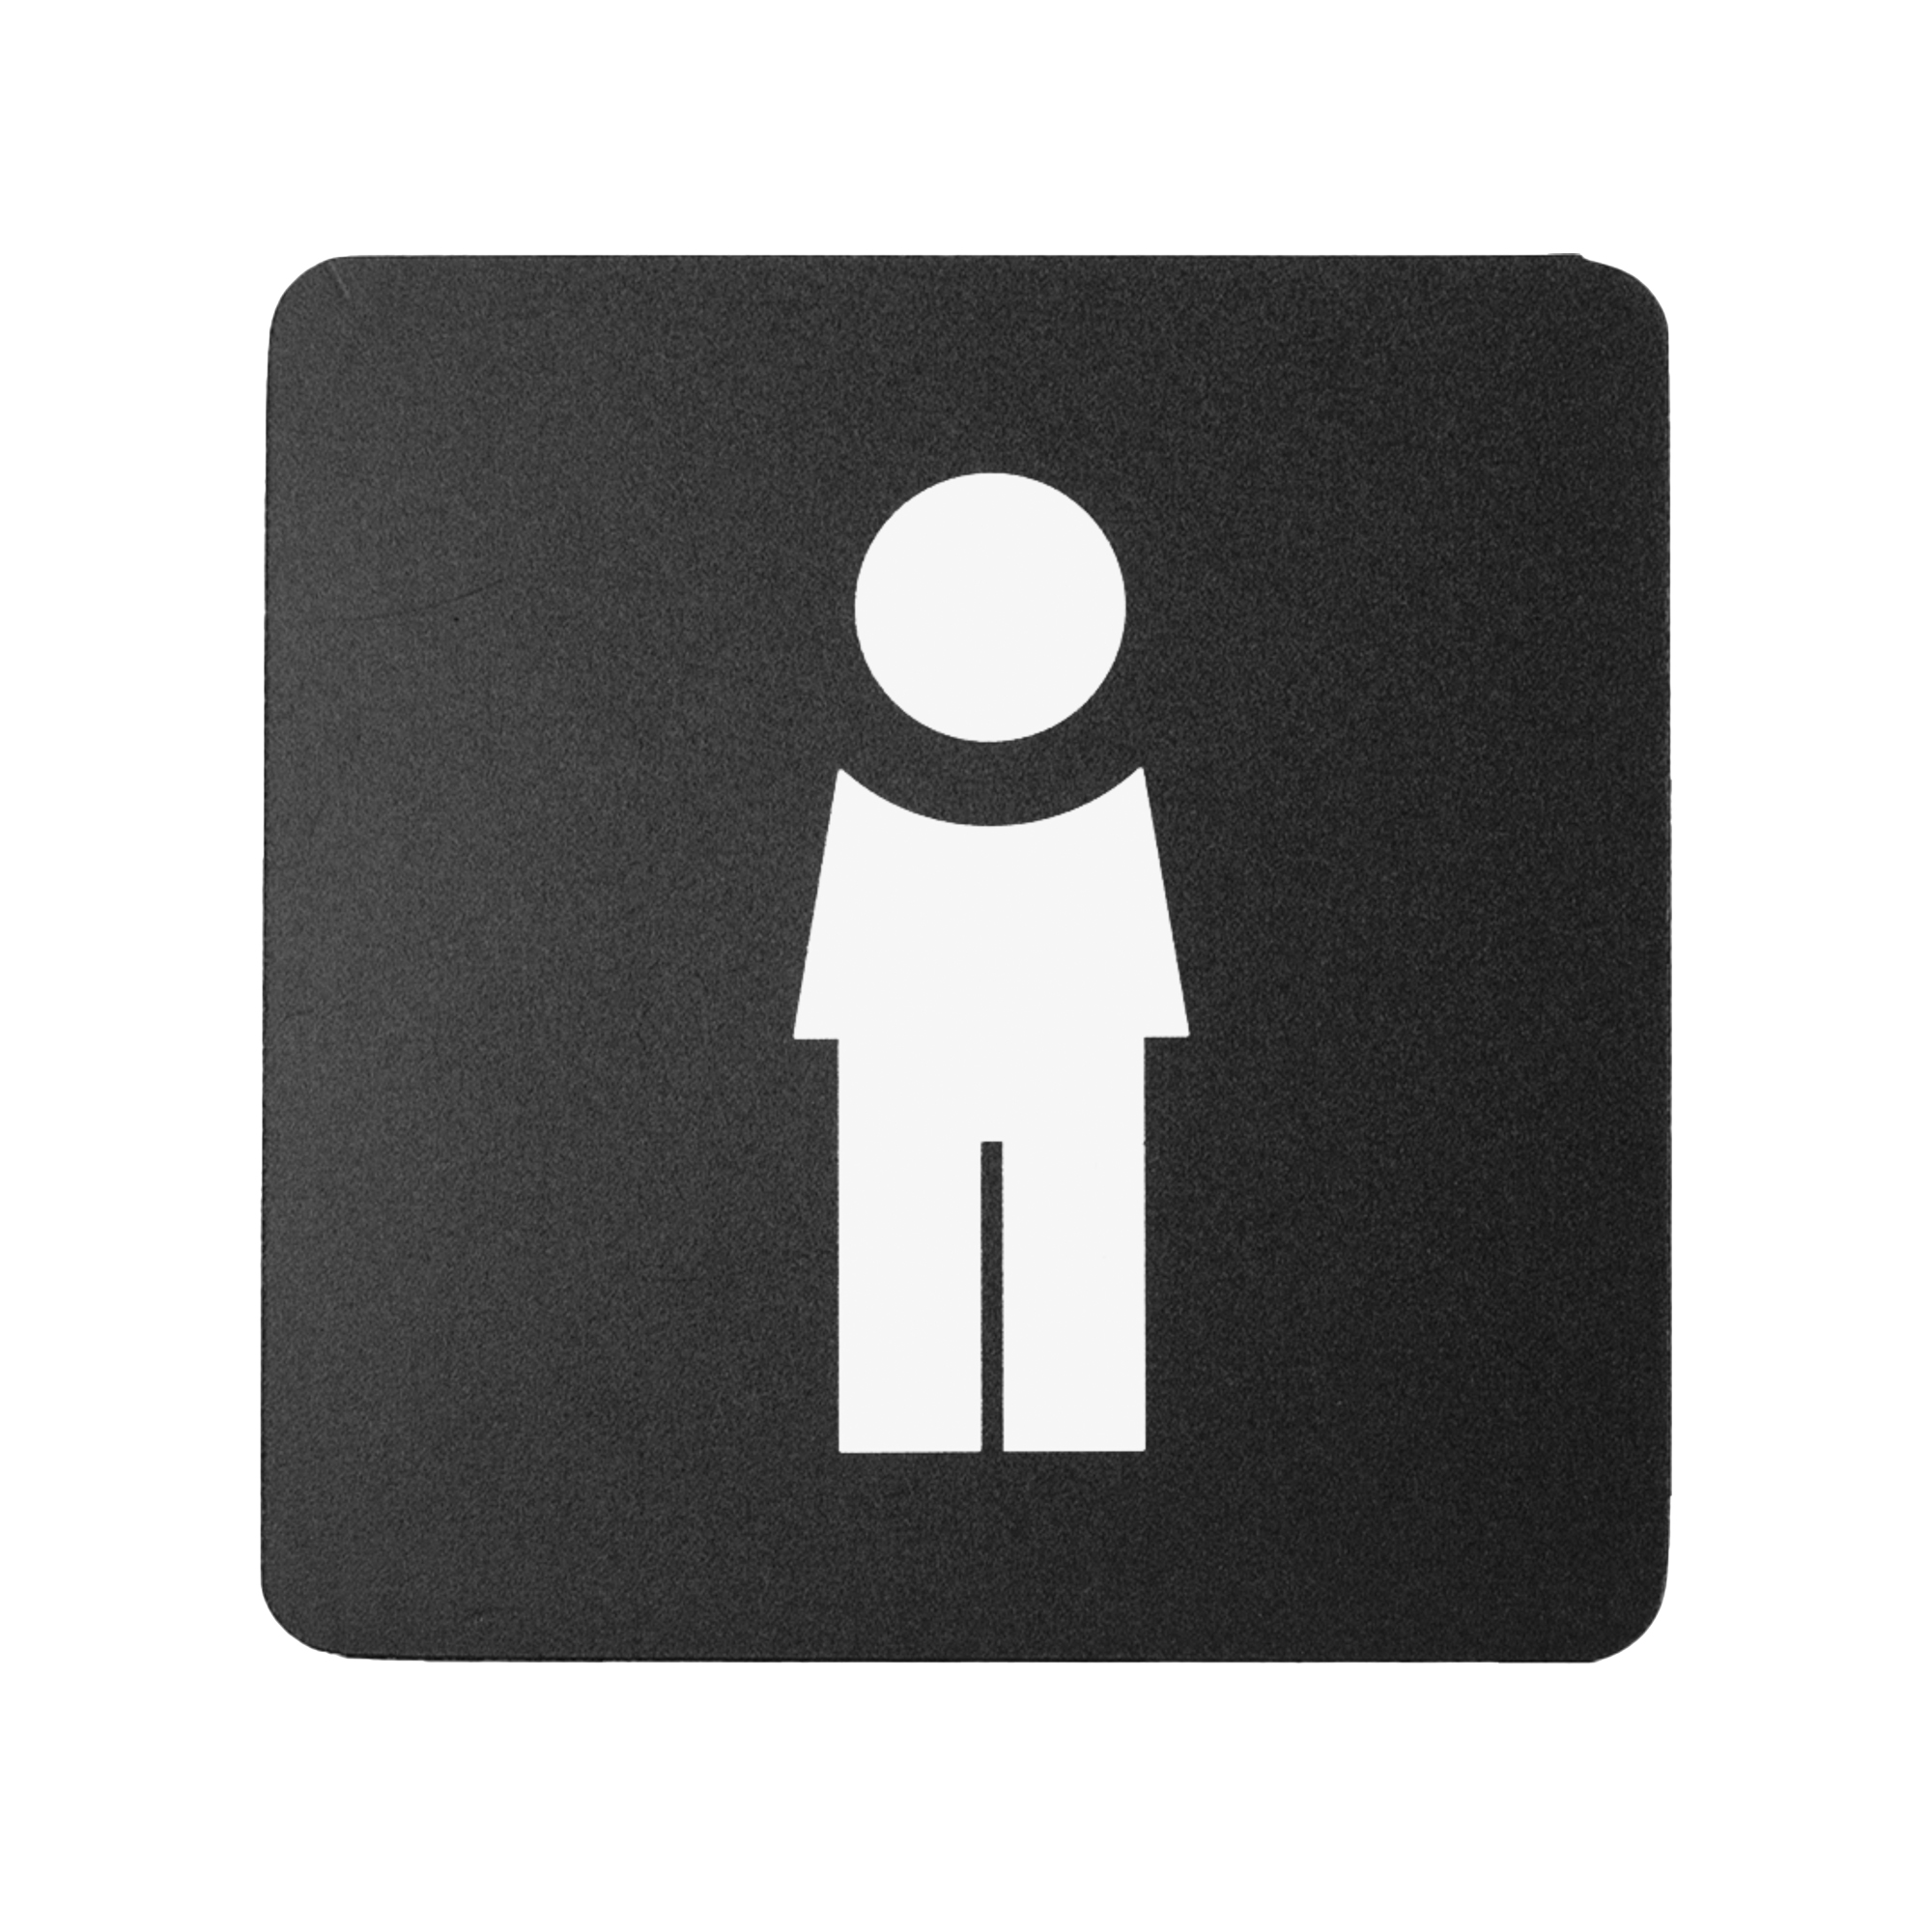 Pittogramma adesivo - toilette uomo - 16 x 16 cm - PVC - nero/bianco - Stilcasa